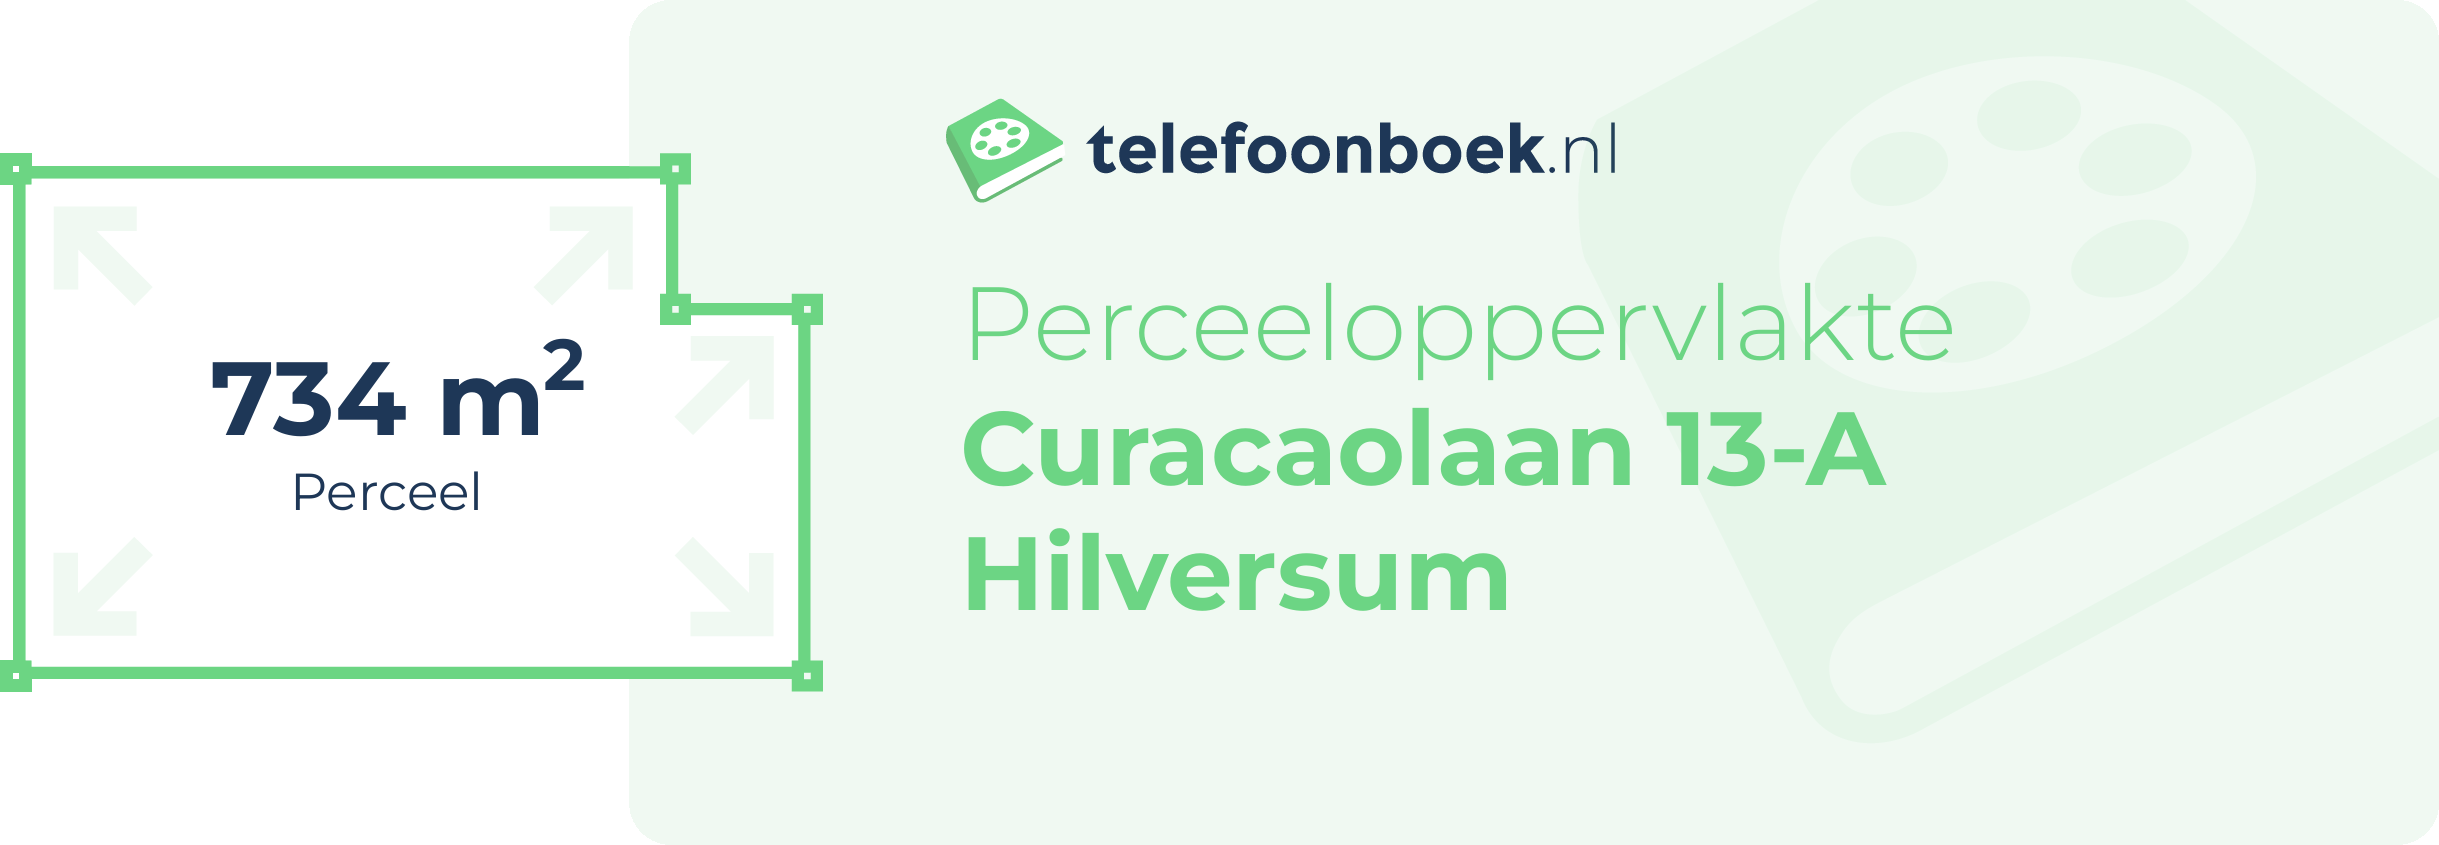 Perceeloppervlakte Curacaolaan 13-A Hilversum